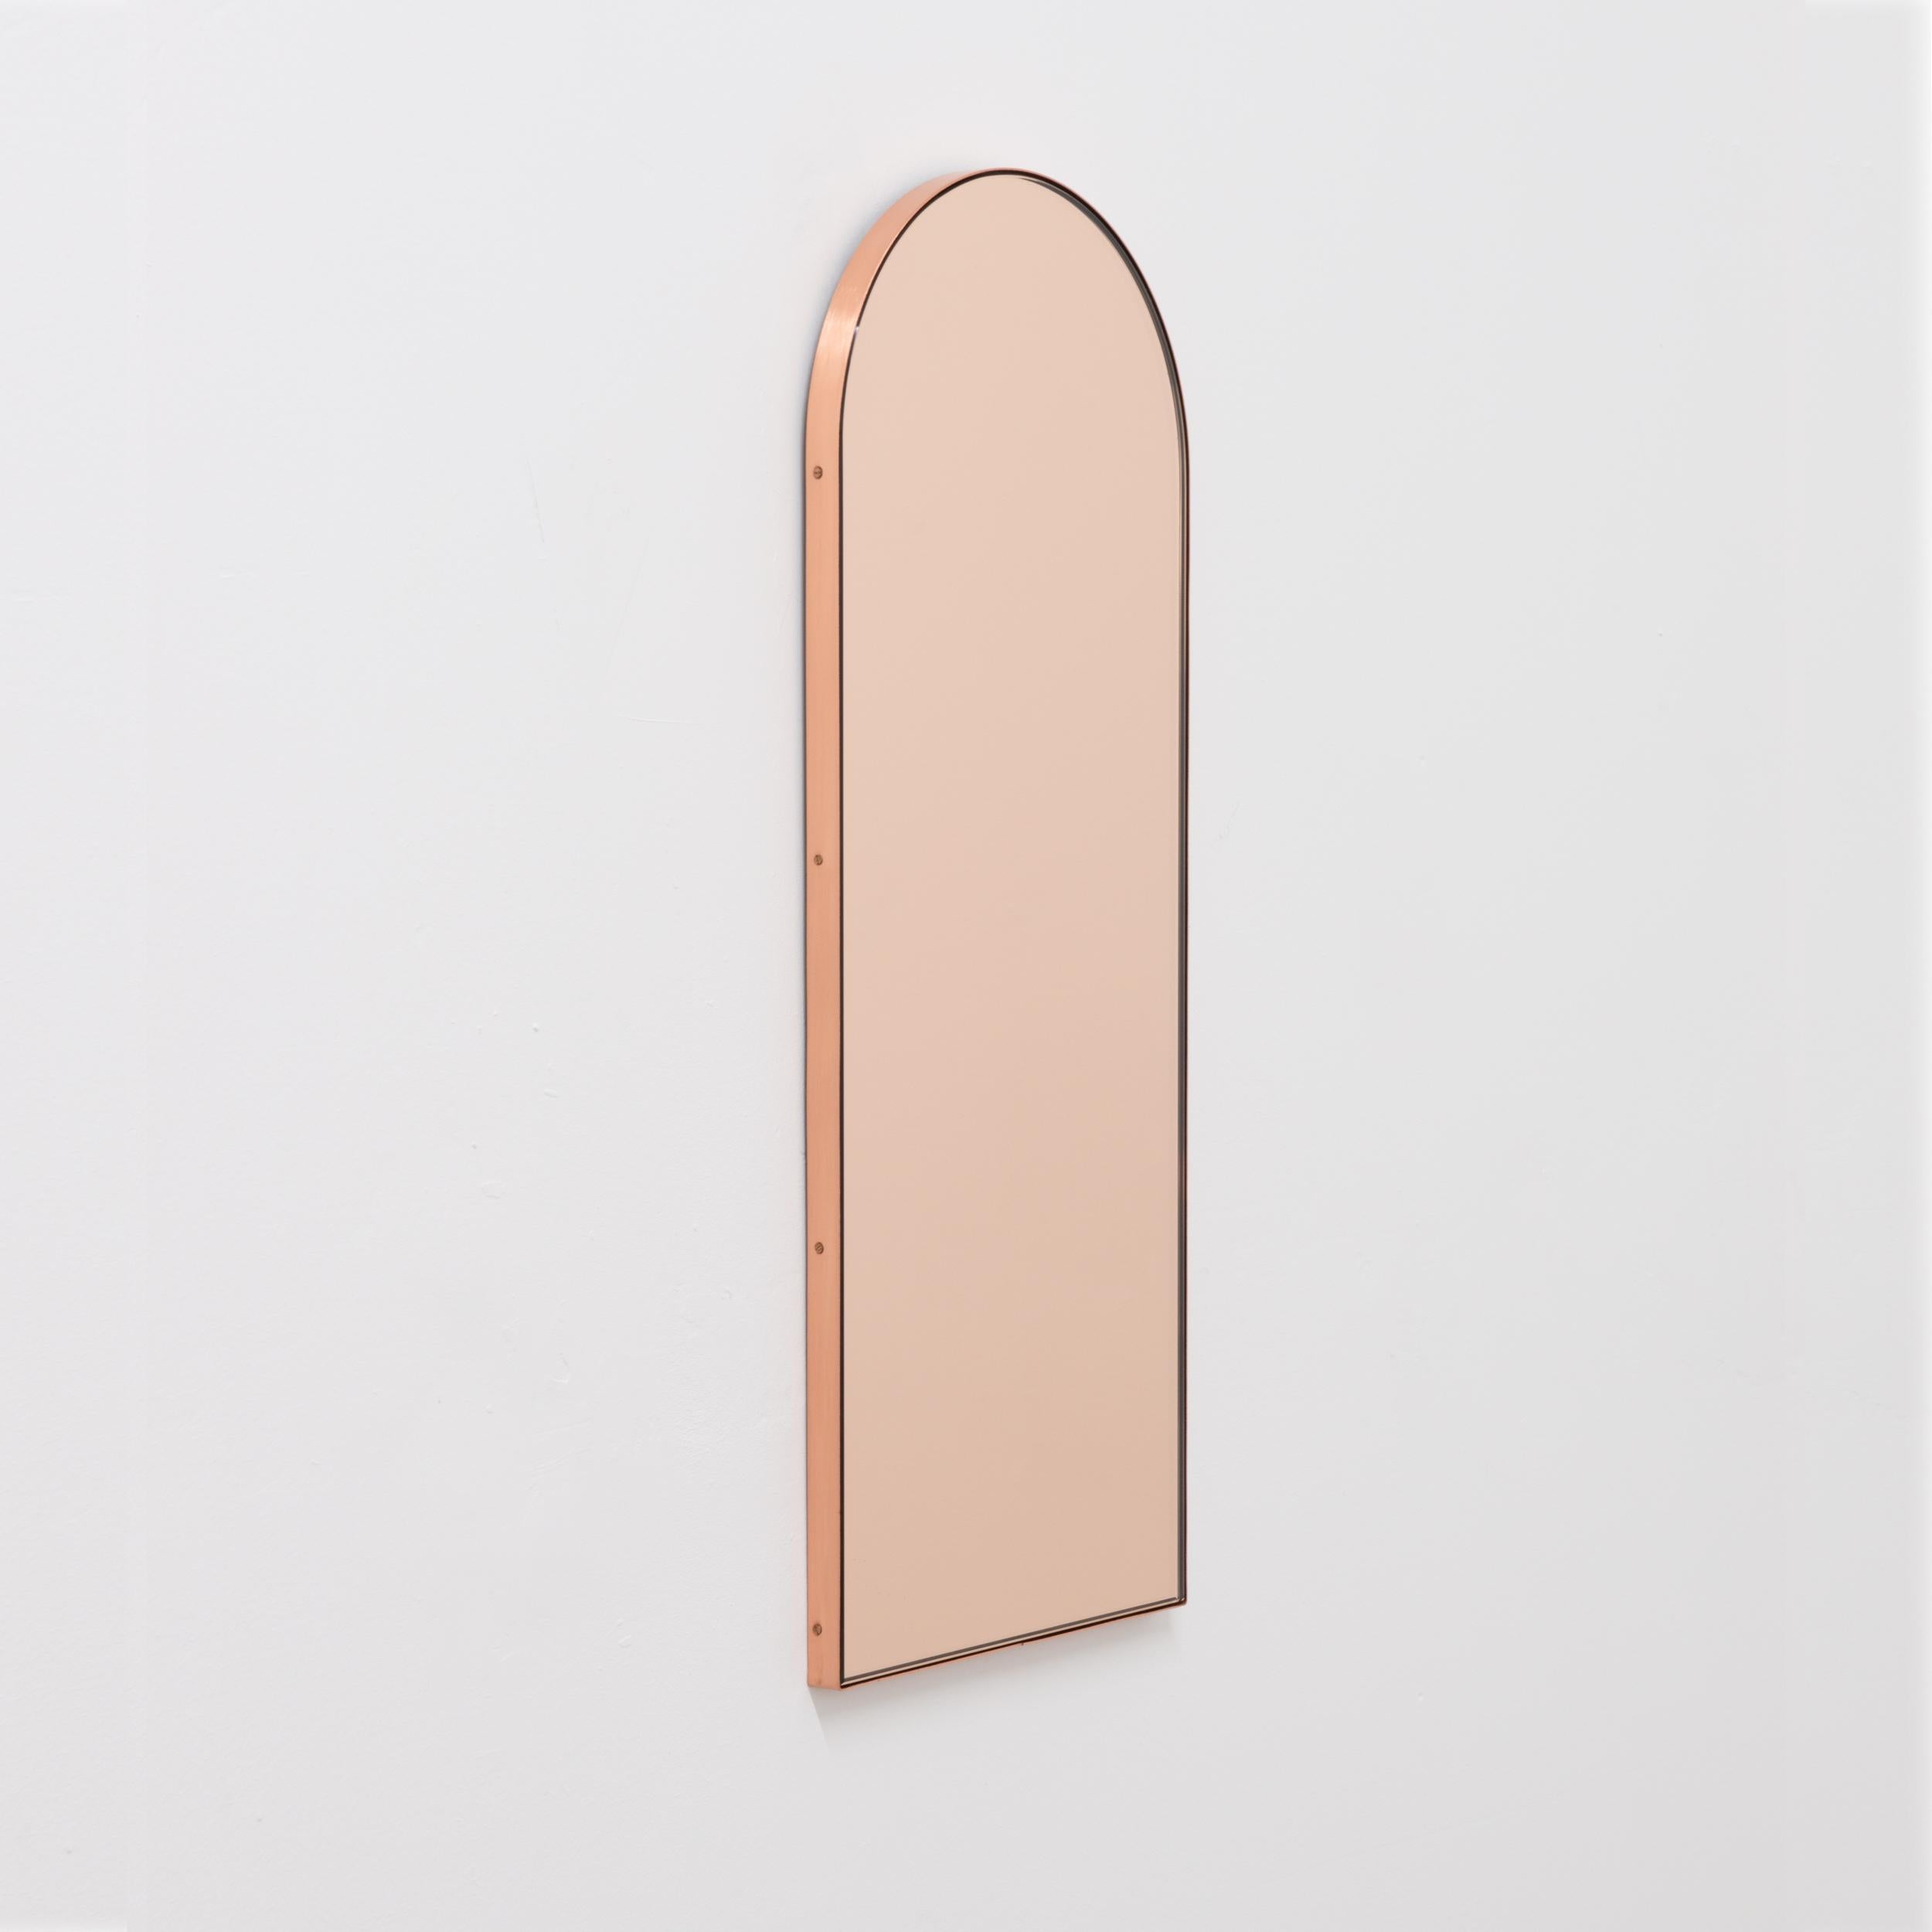 Zeitgenössischer bogenförmiger Spiegel in Roségold/Pfirsich mit einem eleganten Rahmen aus gebürstetem Kupfer. Entworfen und handgefertigt in London, UK.

Die mittelgroßen, großen und extragroßen Spiegel (37 cm x 56 cm, 46 cm x 71 cm und 48 cm x 97